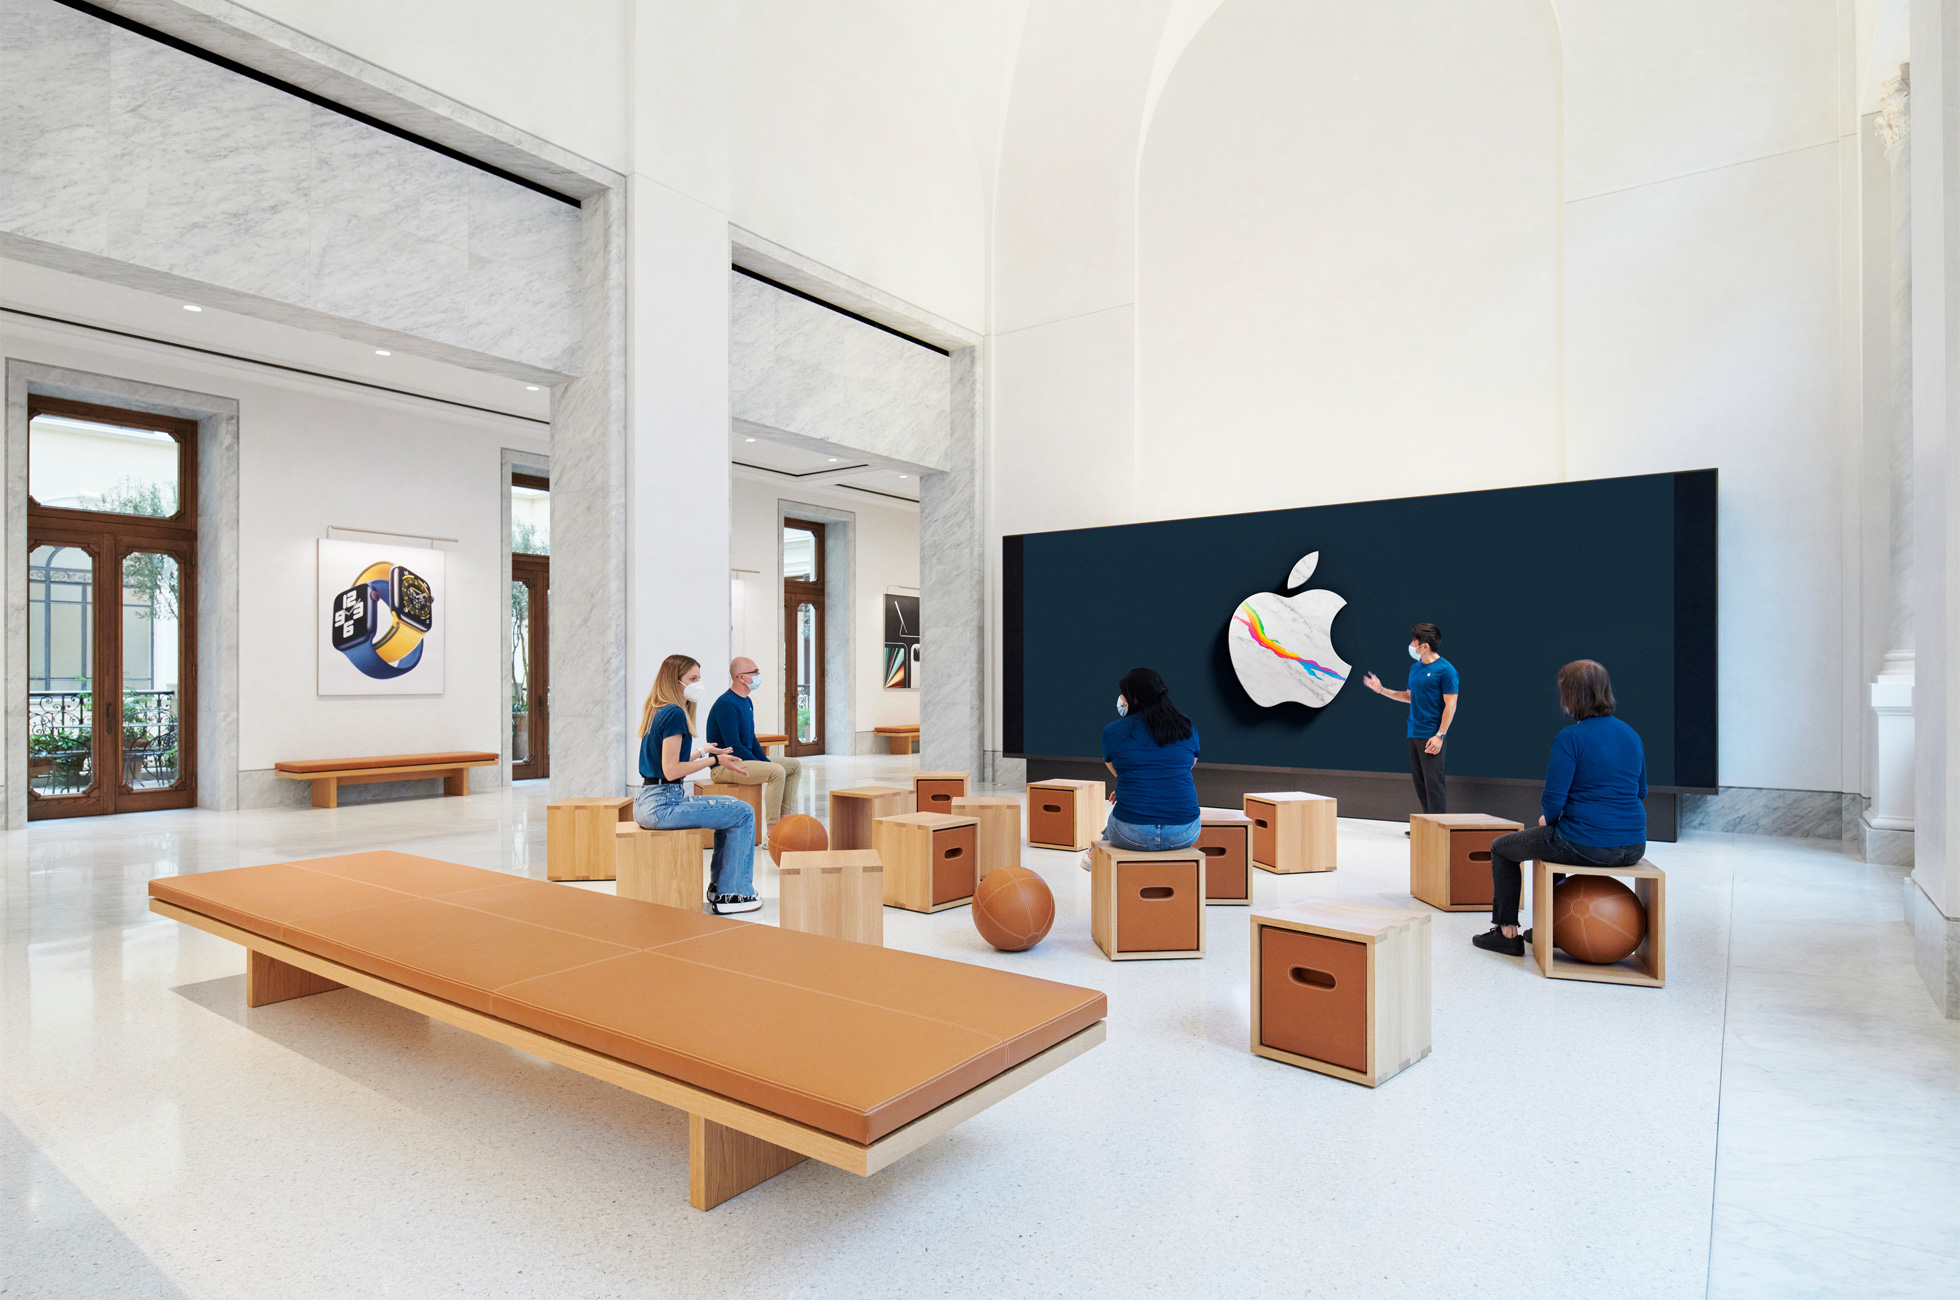 Apple Via Del Corso opens in Rome interior screen wall area 052721